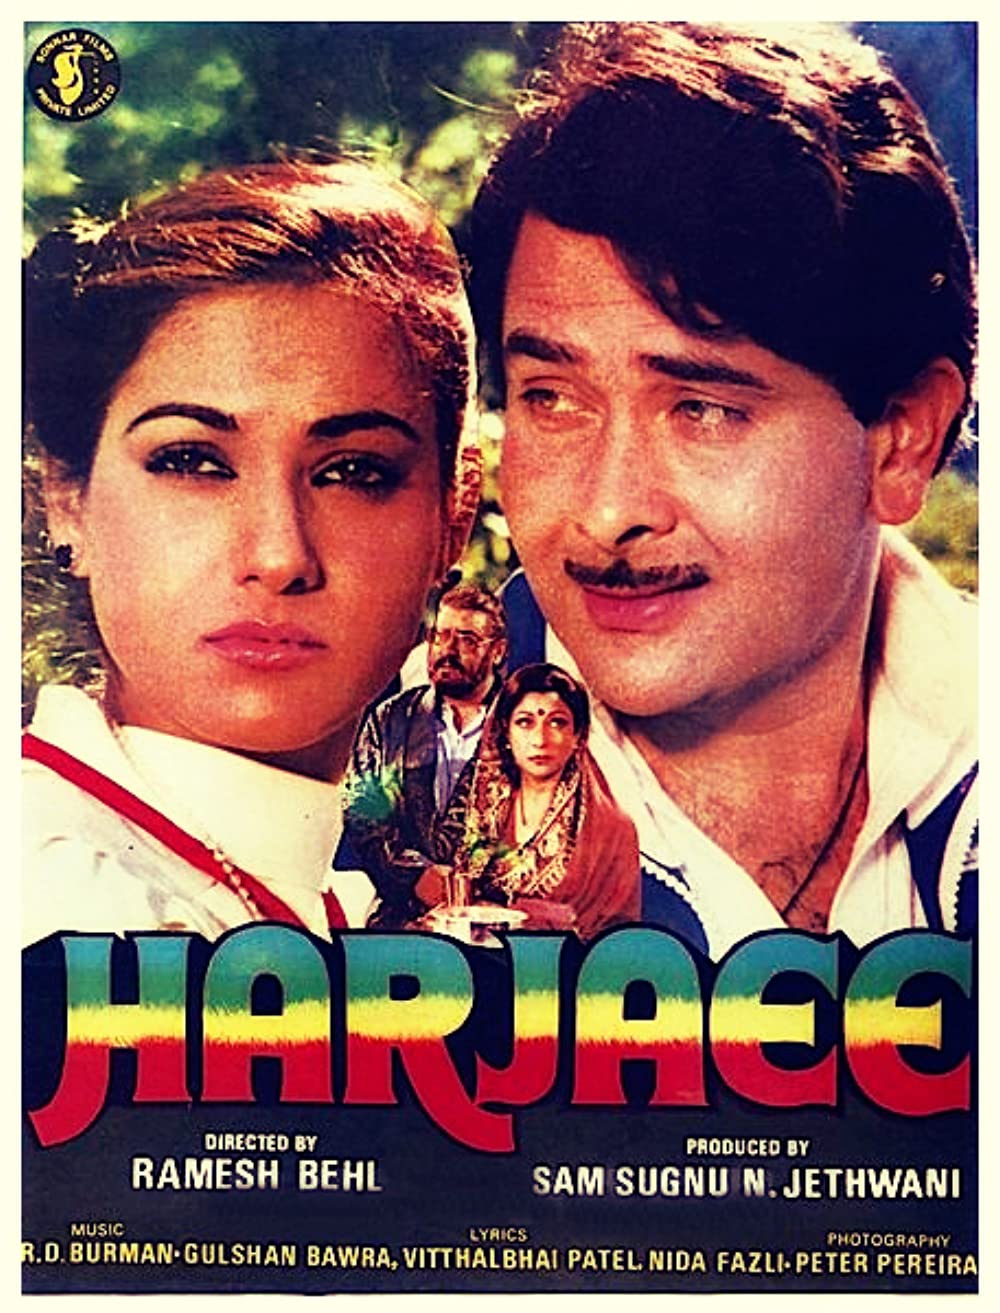 harjaee-1981-18951-poster.jpg